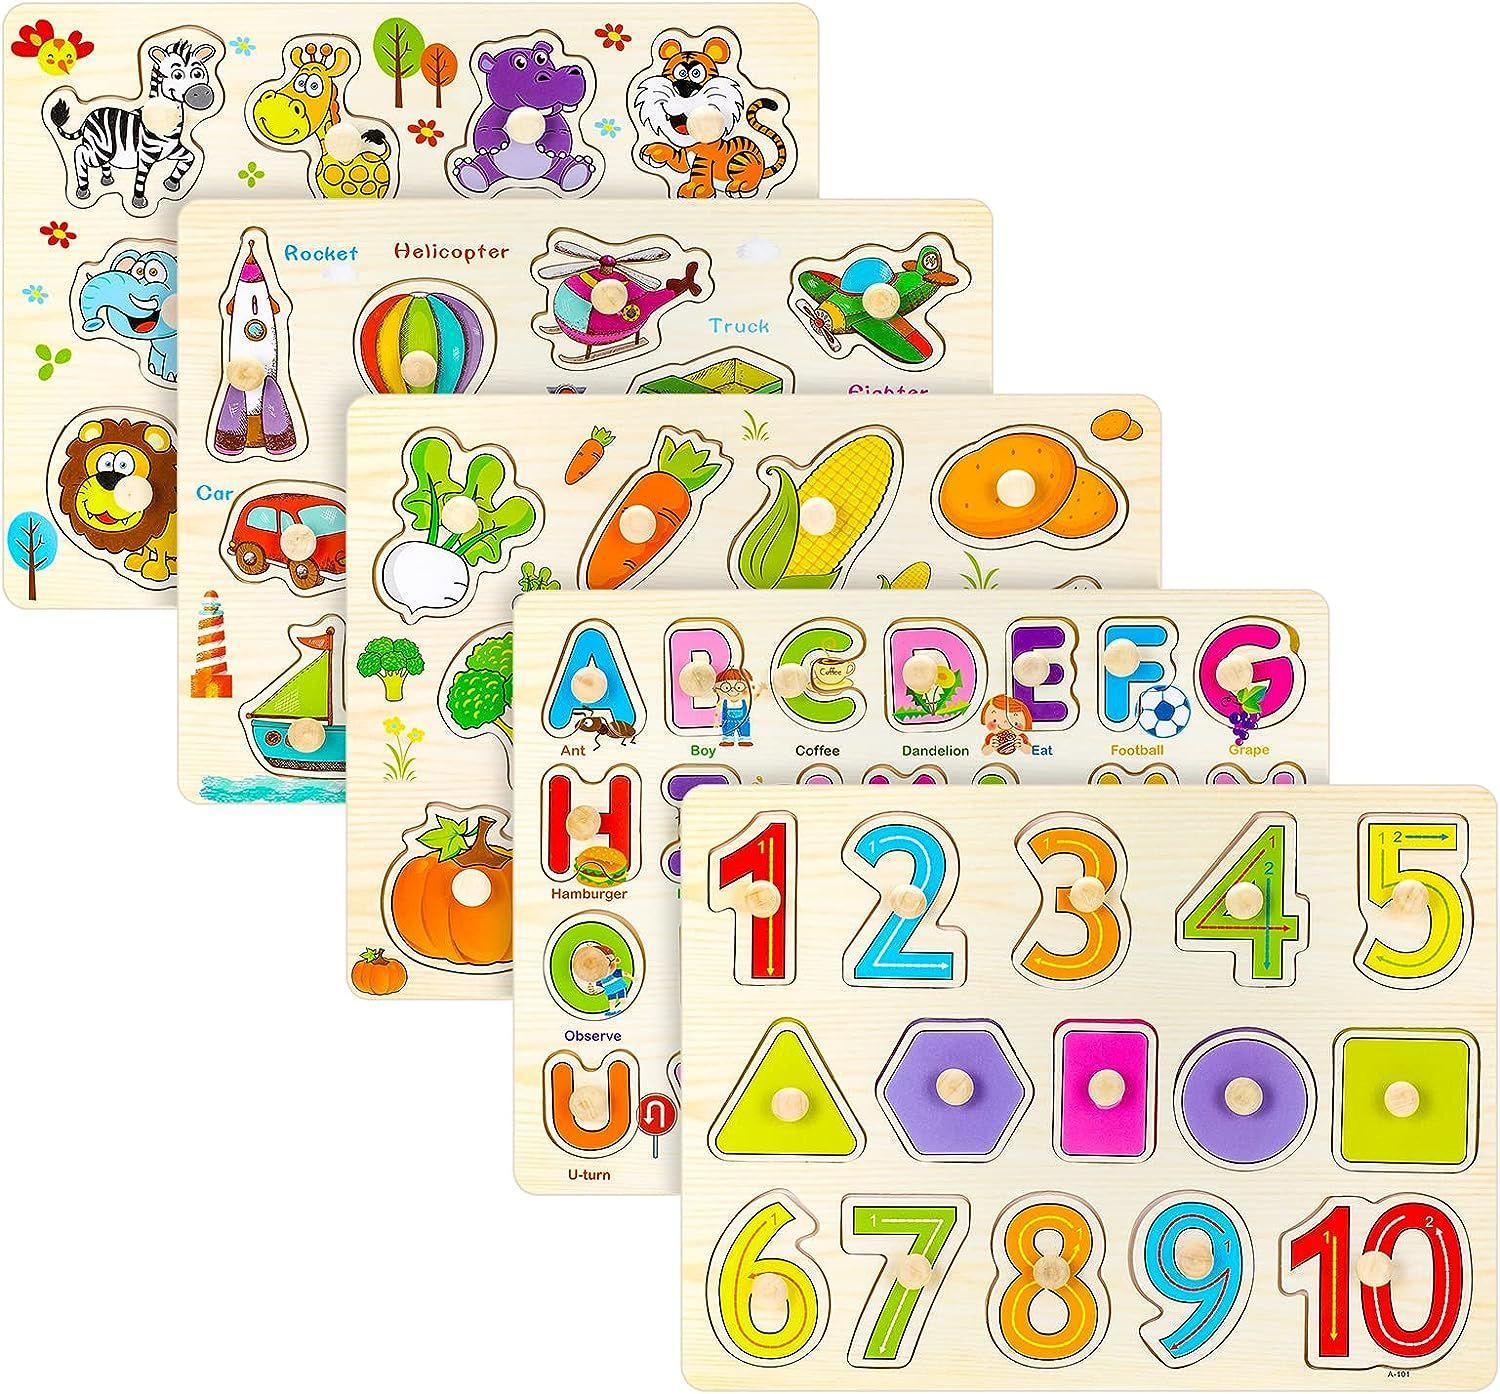 Puzzle En Bois À Encastrement Jeunes Animaux Jouet Puzzle Enfant 2 3 4 5 Ans  Jeux Montessori en Bois avec Animaux Bebe Cadeau